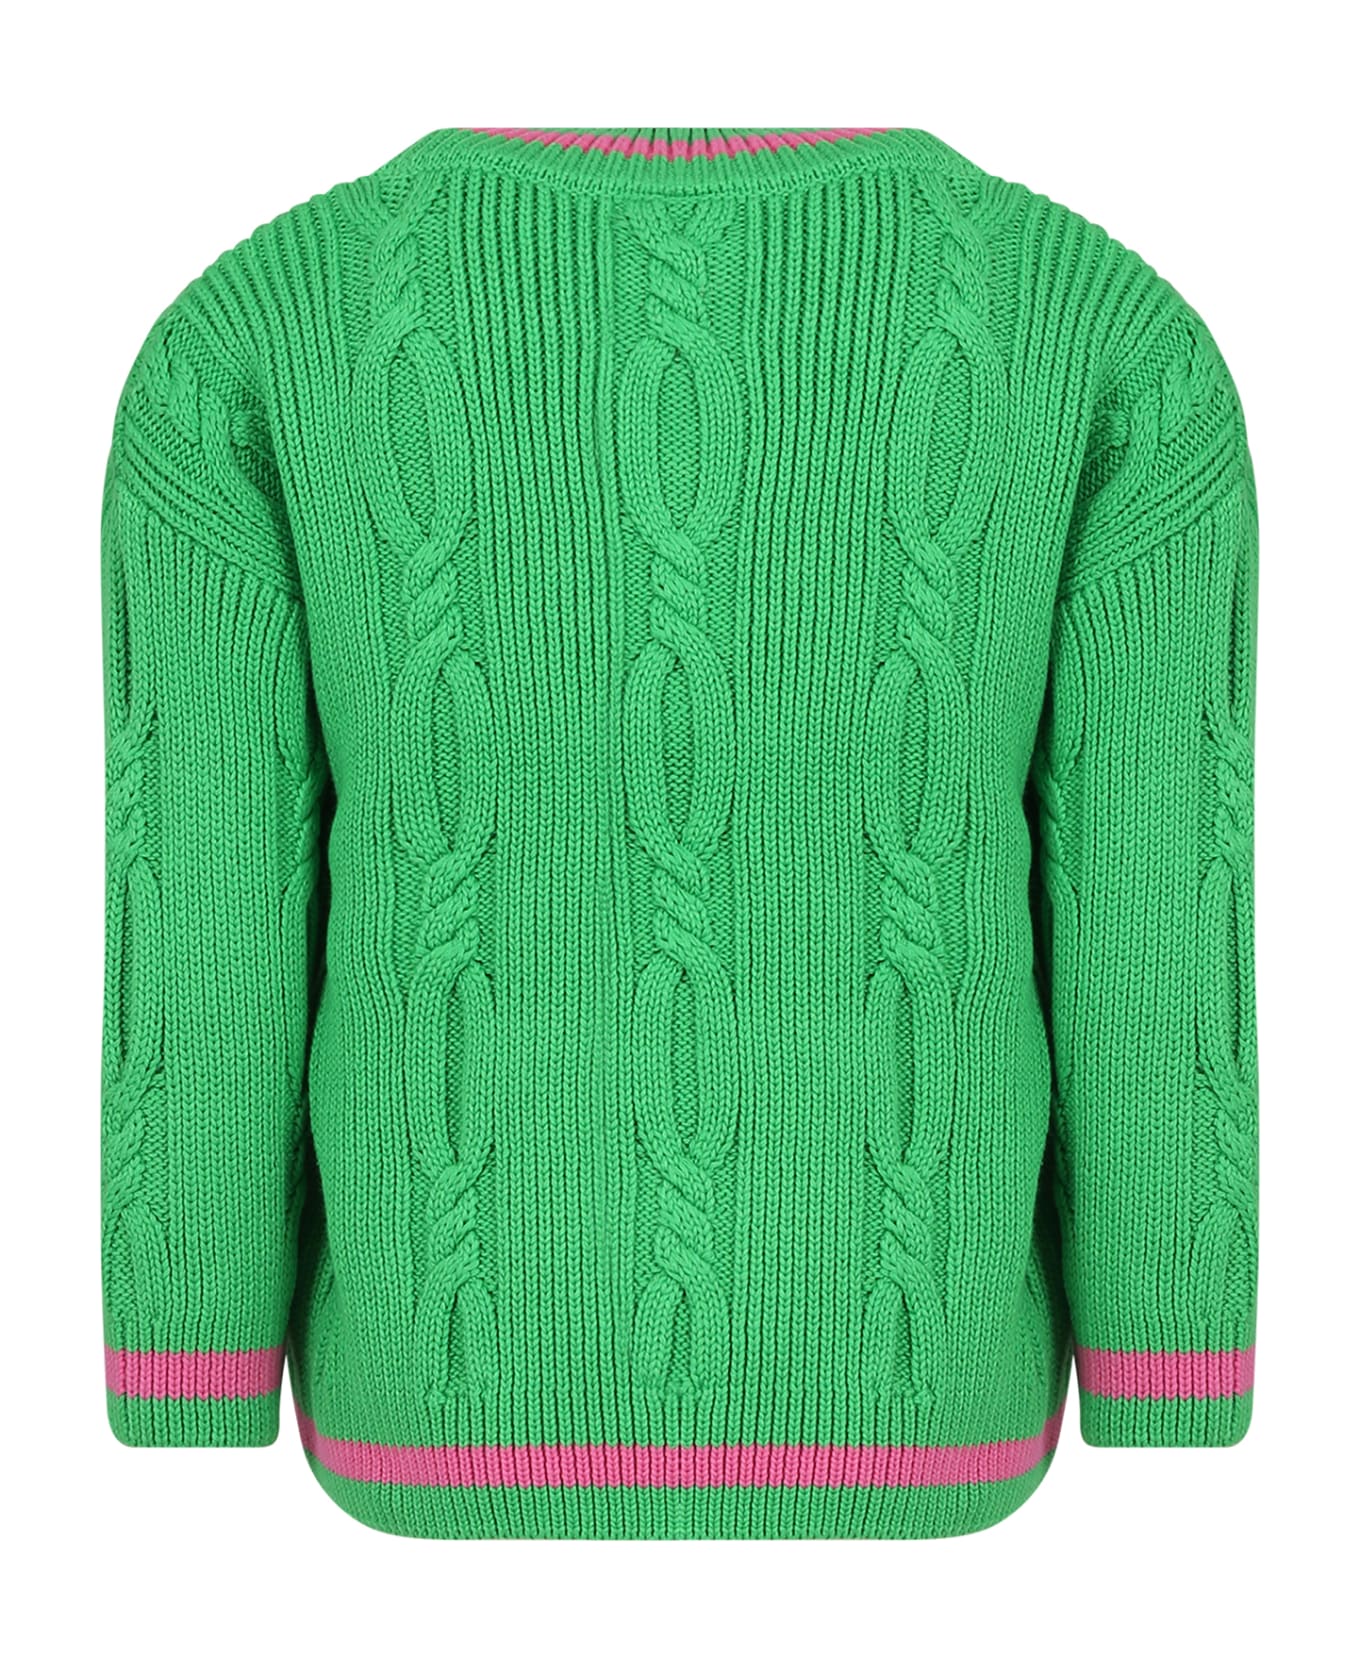 Mini Rodini Green Sweater For Girl - Green